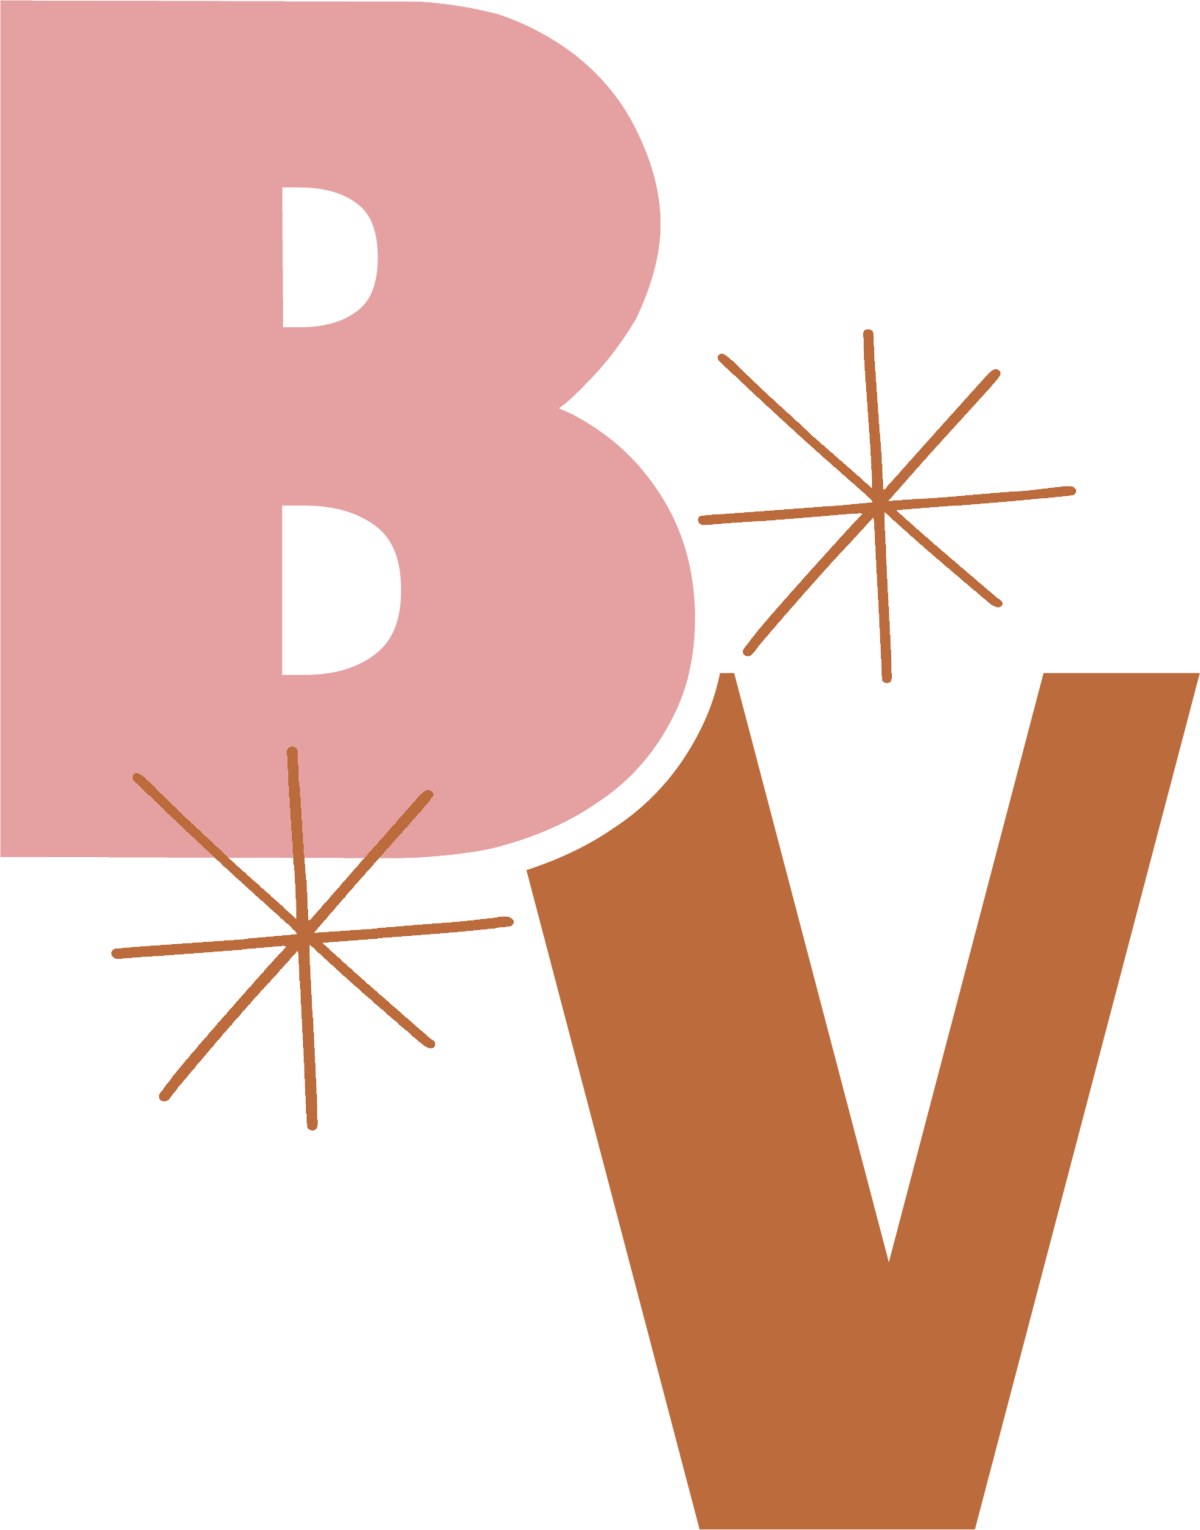 BVSUBvariation